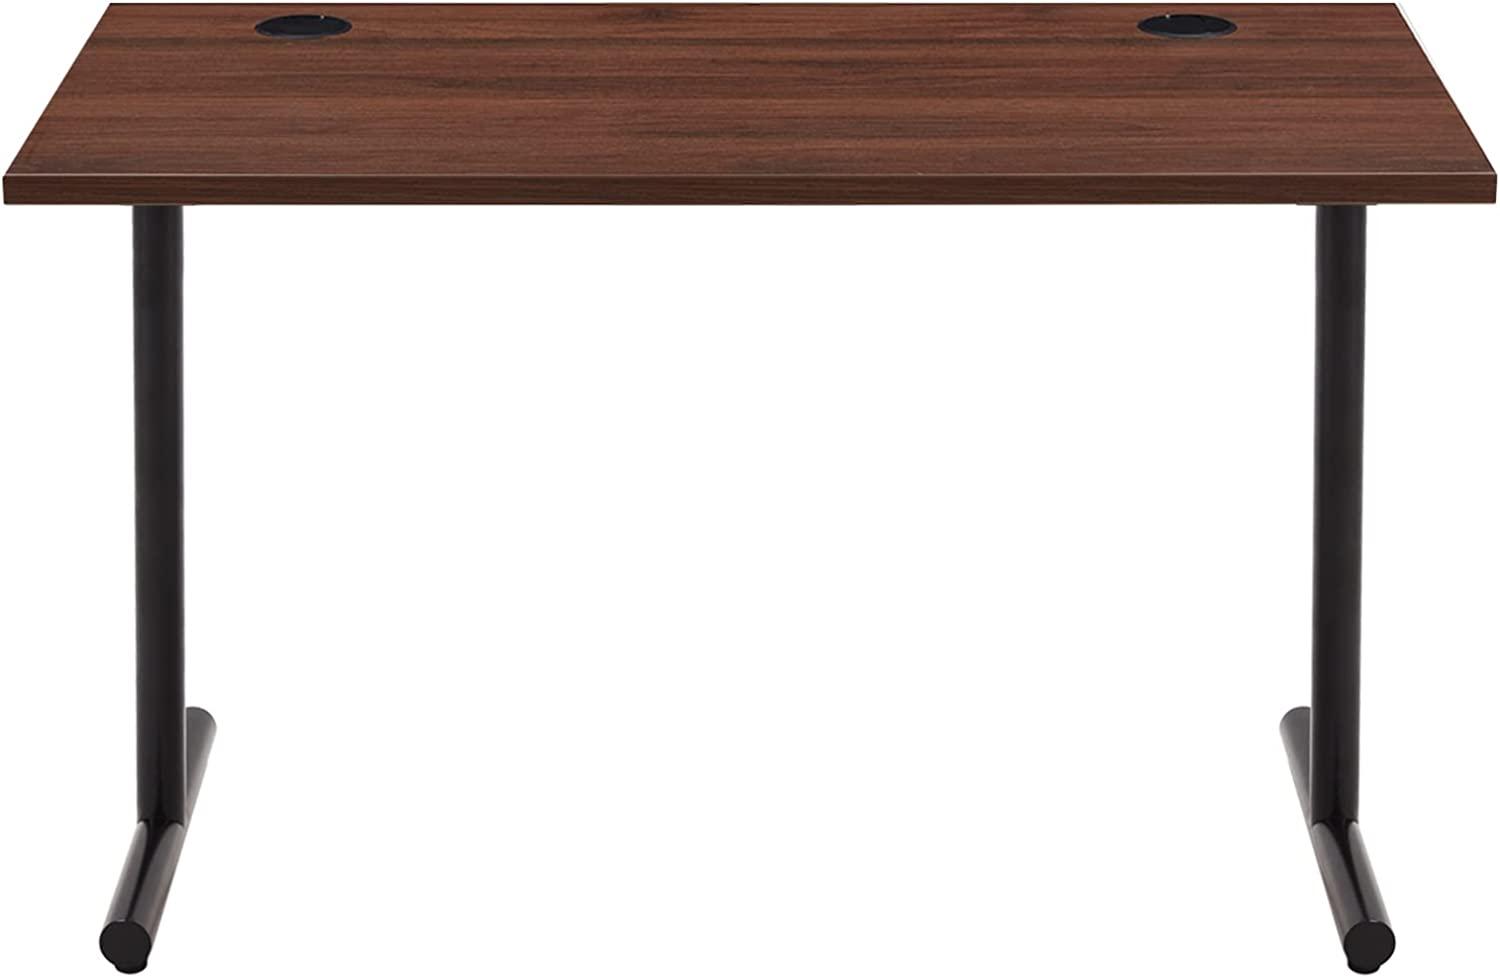 Amazon Marke - Movian Schlichter Schreibtisch, Platte Nussbaum und schwarzes Gestell, 120 x 60 x 73,6 cm Bild 1